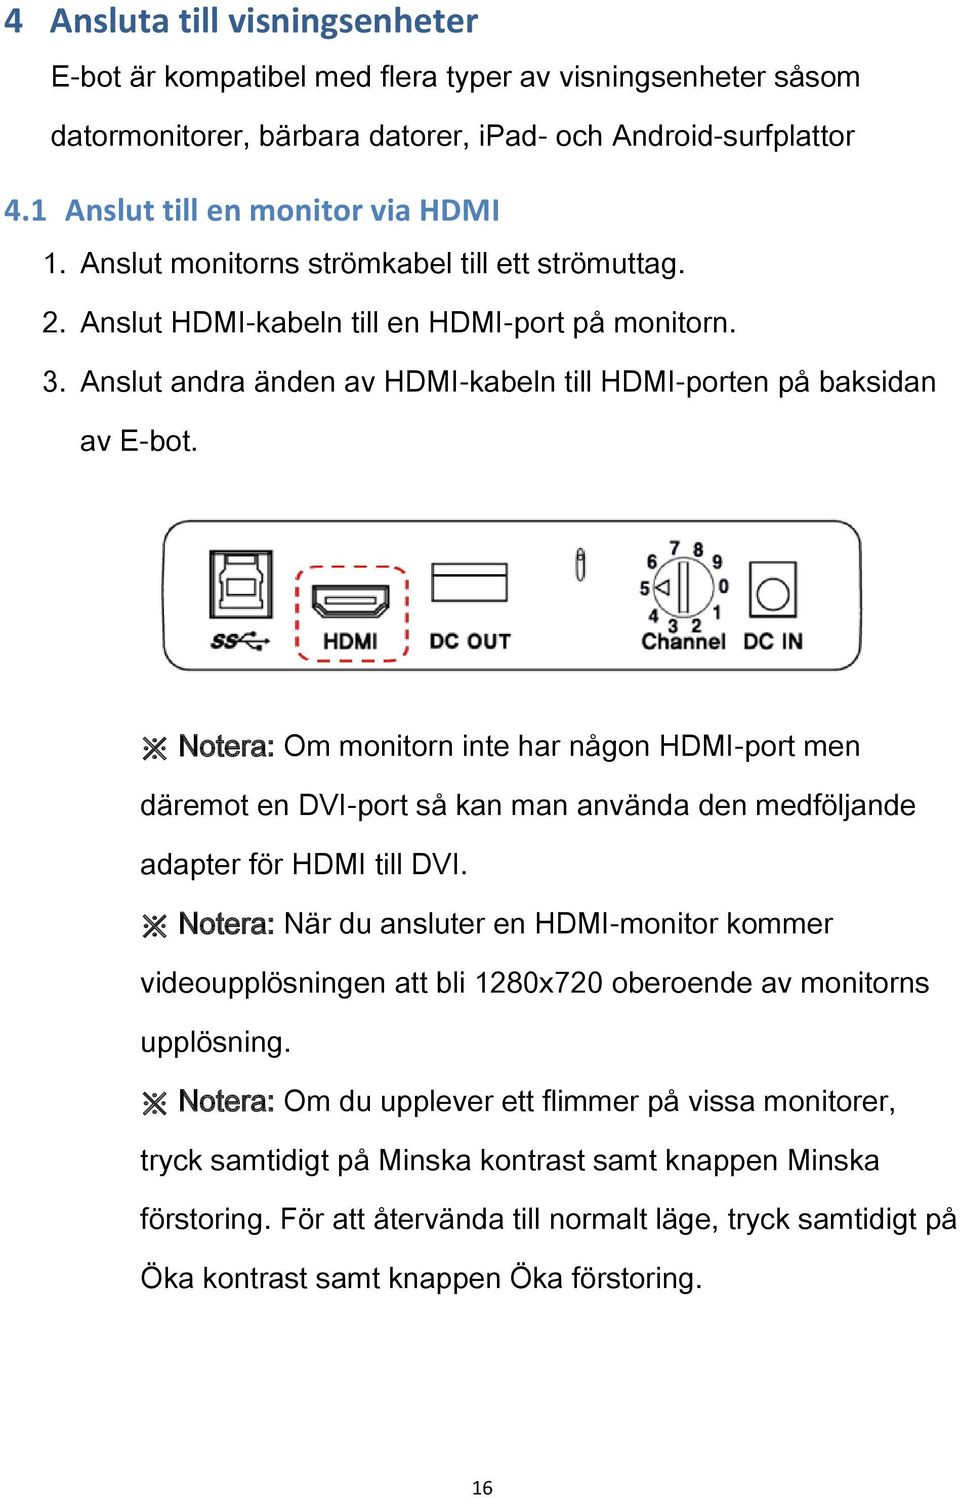 Notera: Om monitorn inte har någon HDMI-port men däremot en DVI-port så kan man använda den medföljande adapter för HDMI till DVI.